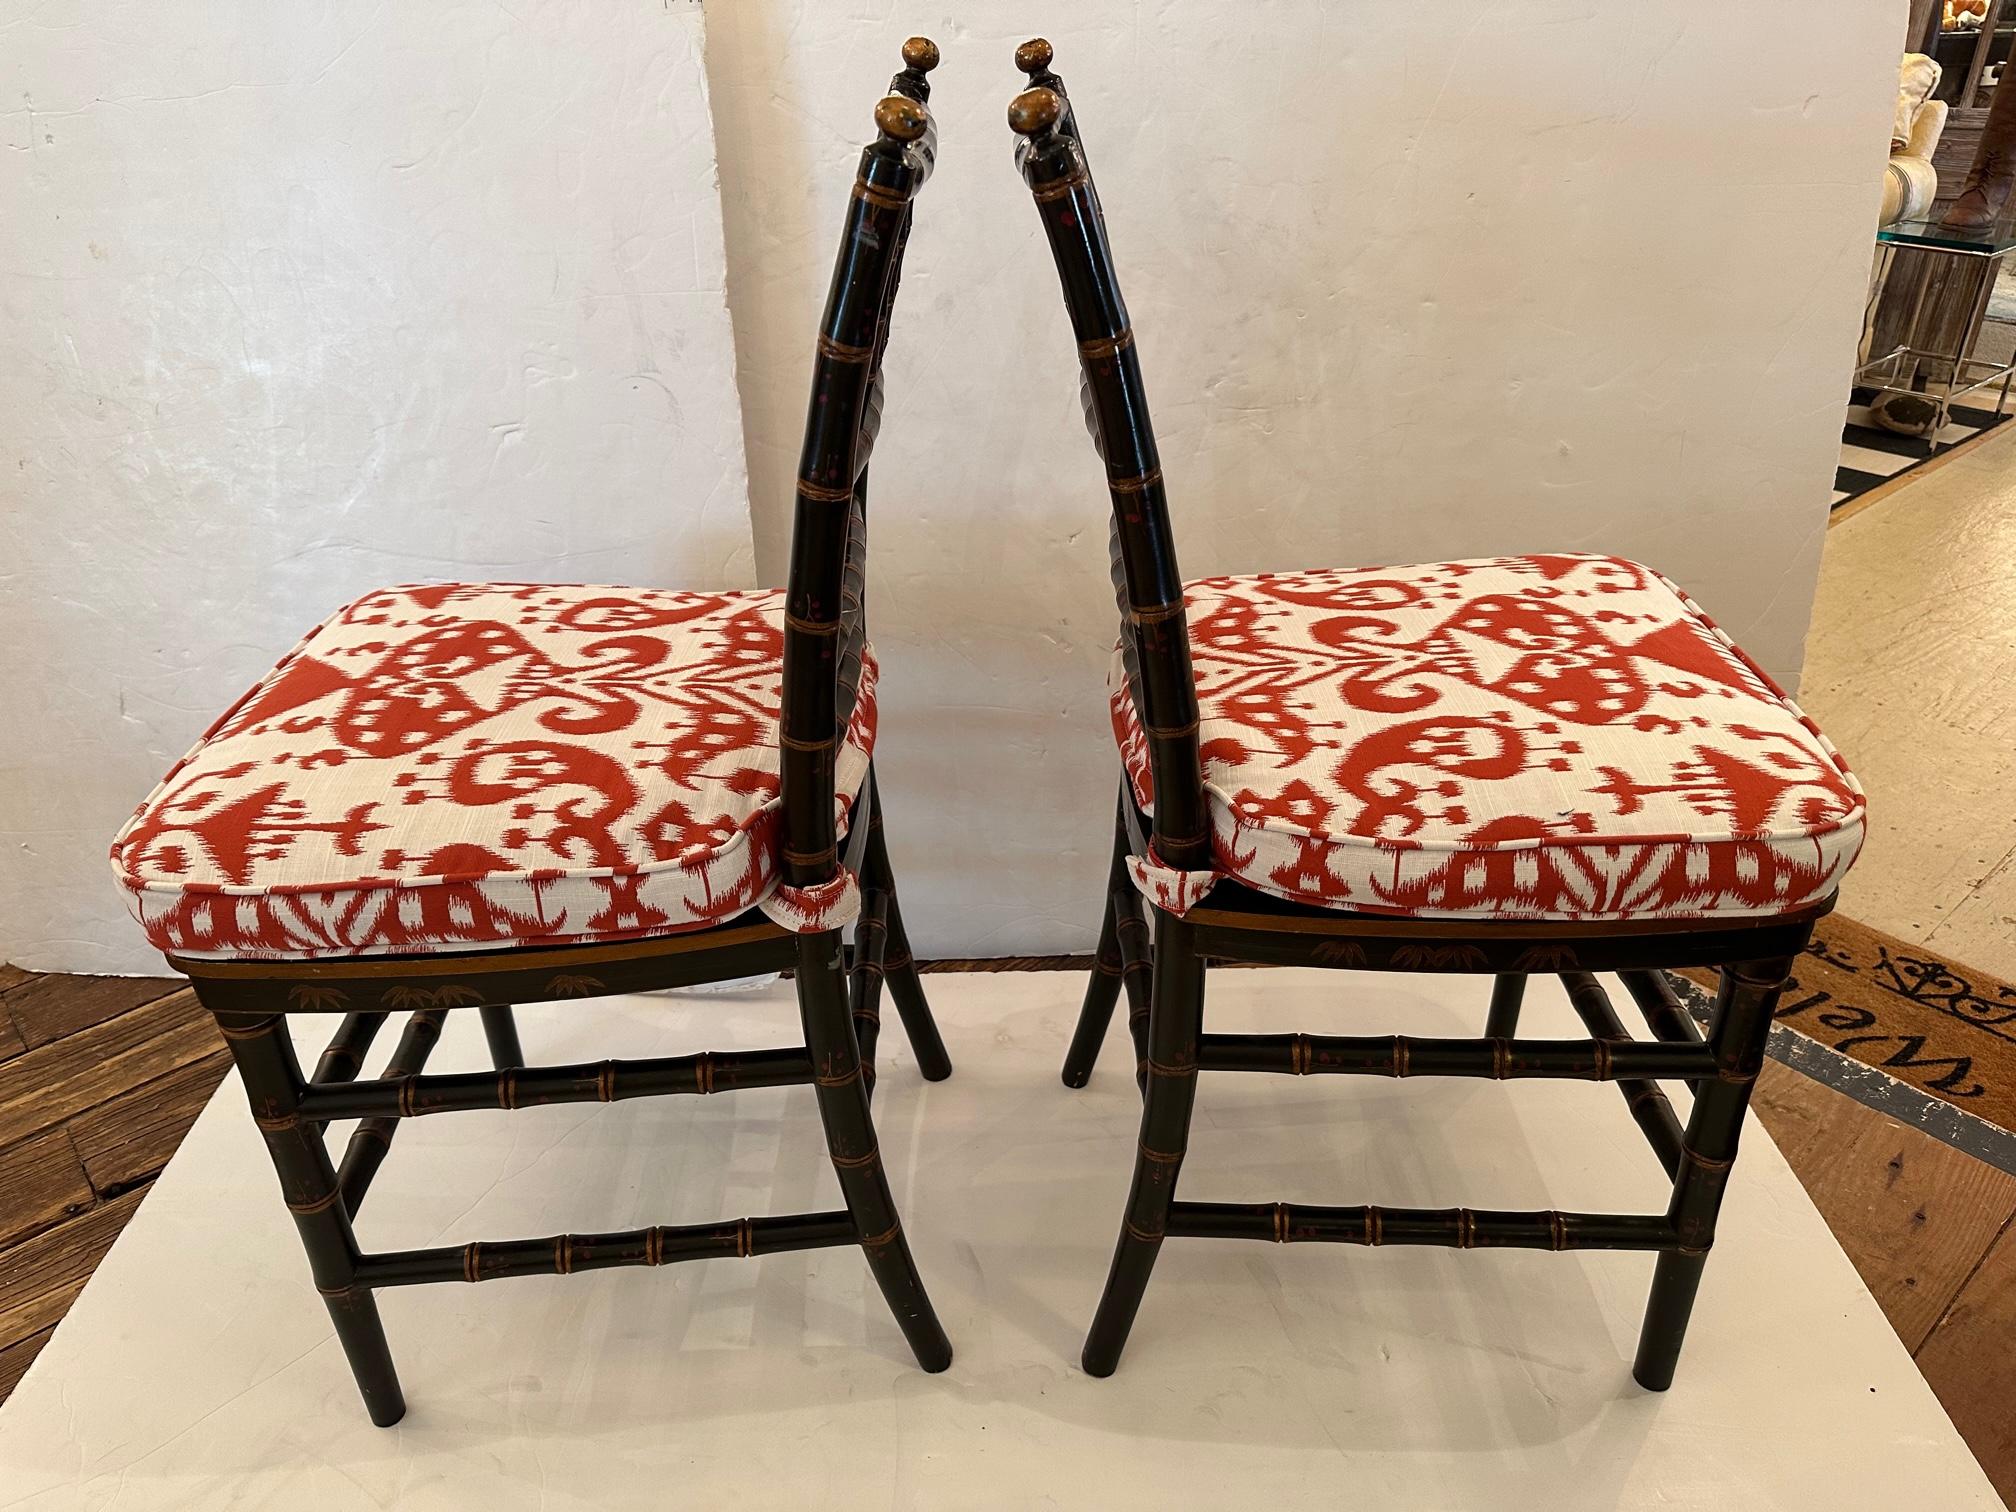 Jolie paire de chaises d'appoint en faux bambou noir, décorées à la main et dont les sièges ont été récemment rembourrés.  Le tissu rouge et blanc contraste et complète les couleurs du bois.